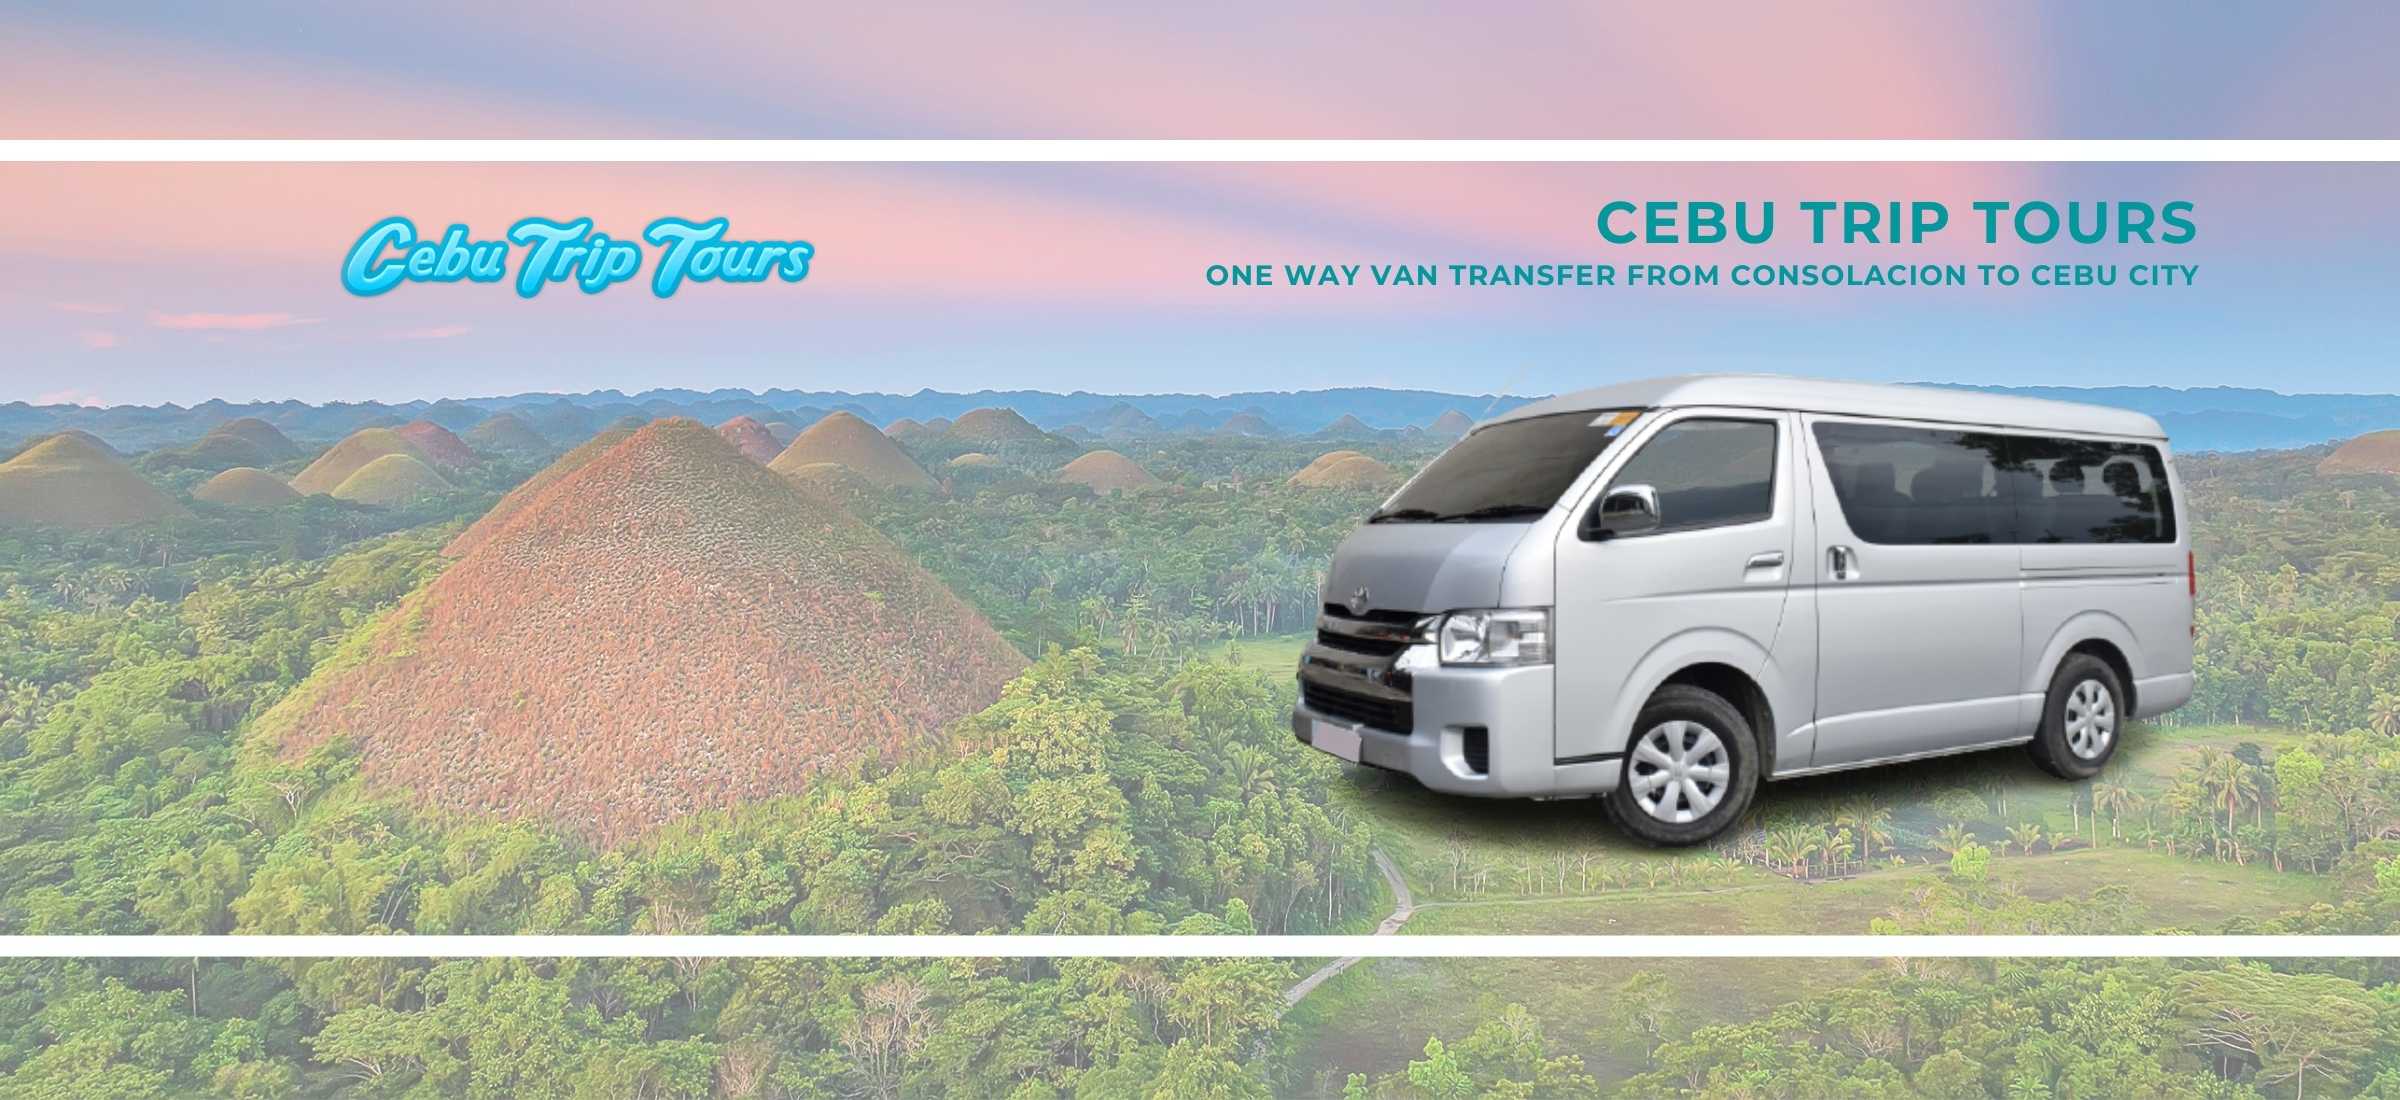 One Way Van Transfer from Cebu City to Consolacion